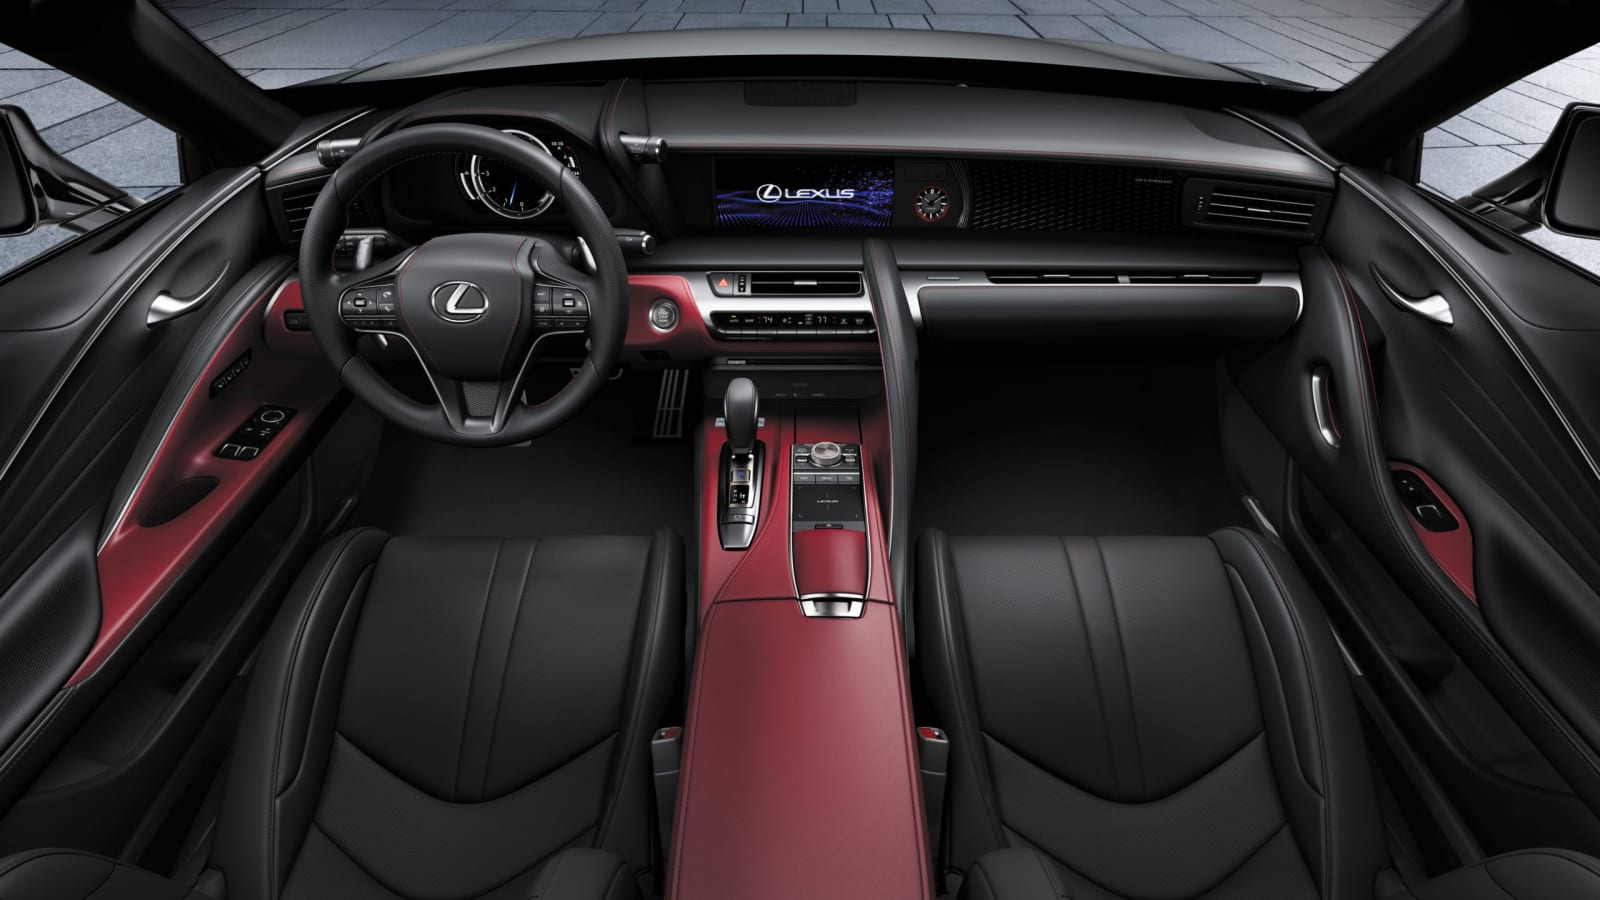 2022 Lexus LC 500 Inspiration Series erhält rote Akzente und einzigartige Räder